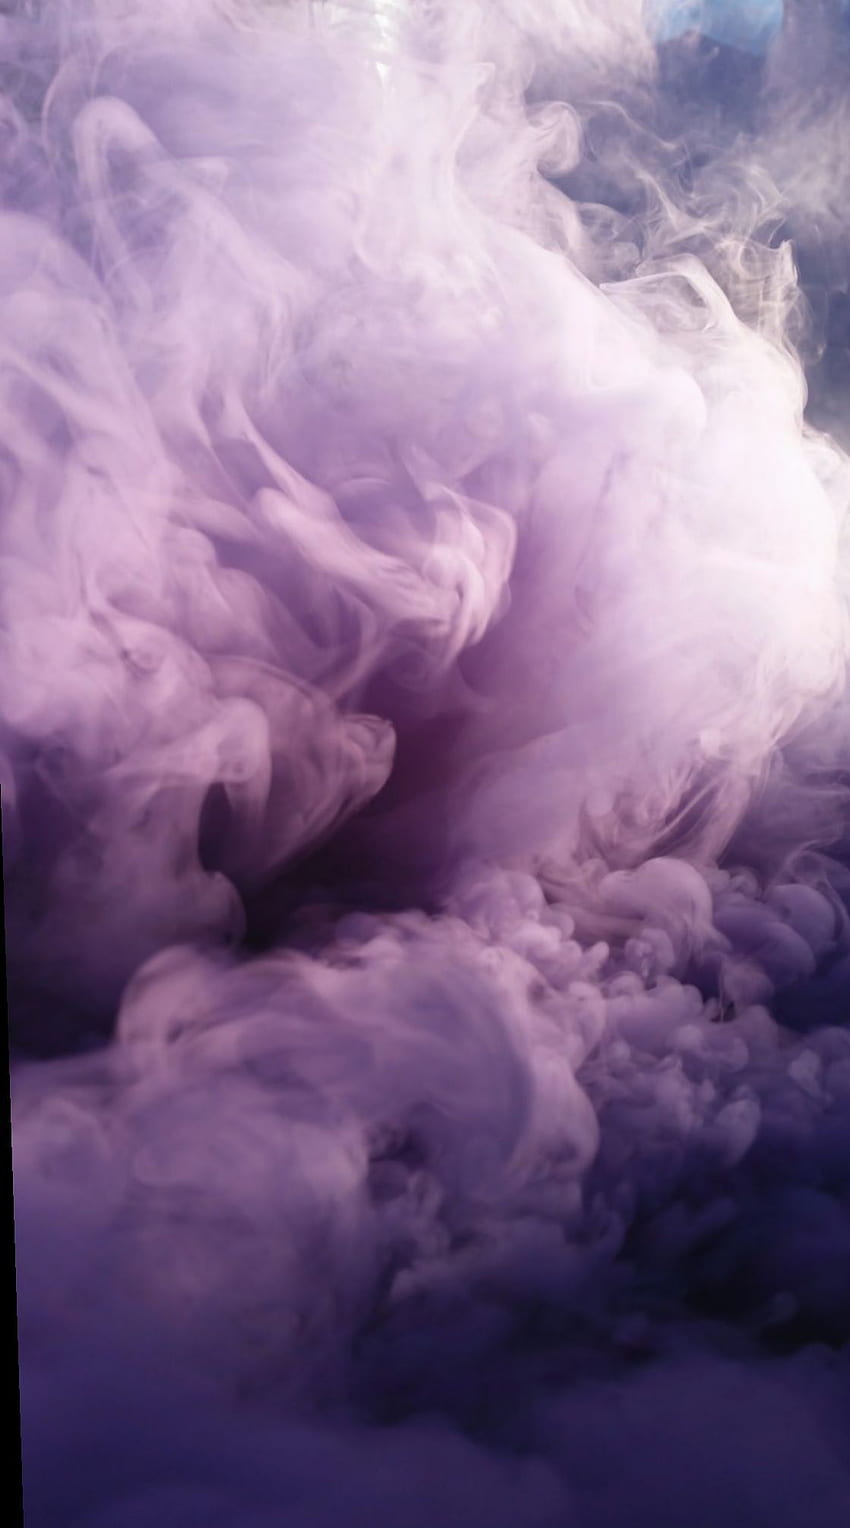 Purple Smoke Images  Free Download on Freepik